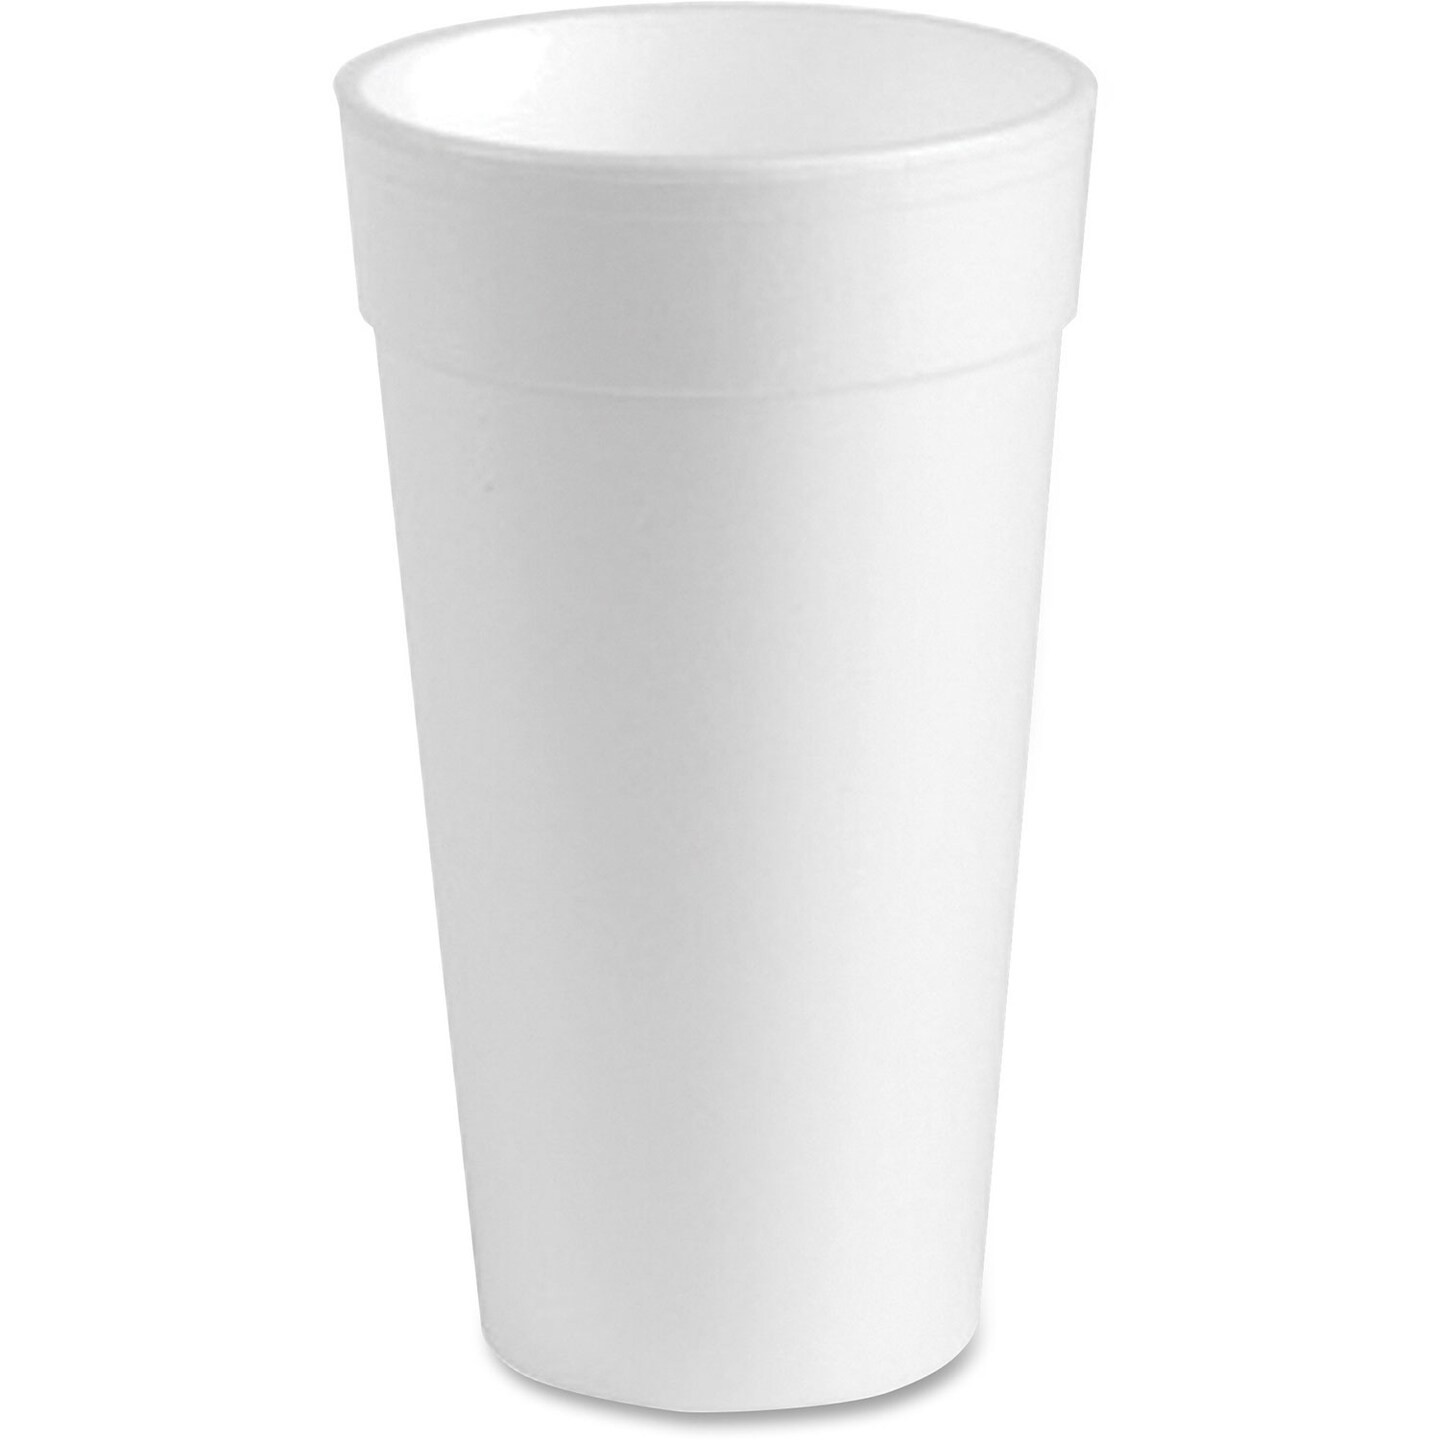 Genuine Joe Styrofoam Cup - 300 / Carton - White - Foam GJO25251, GJO 25251  - Office Supply Hut